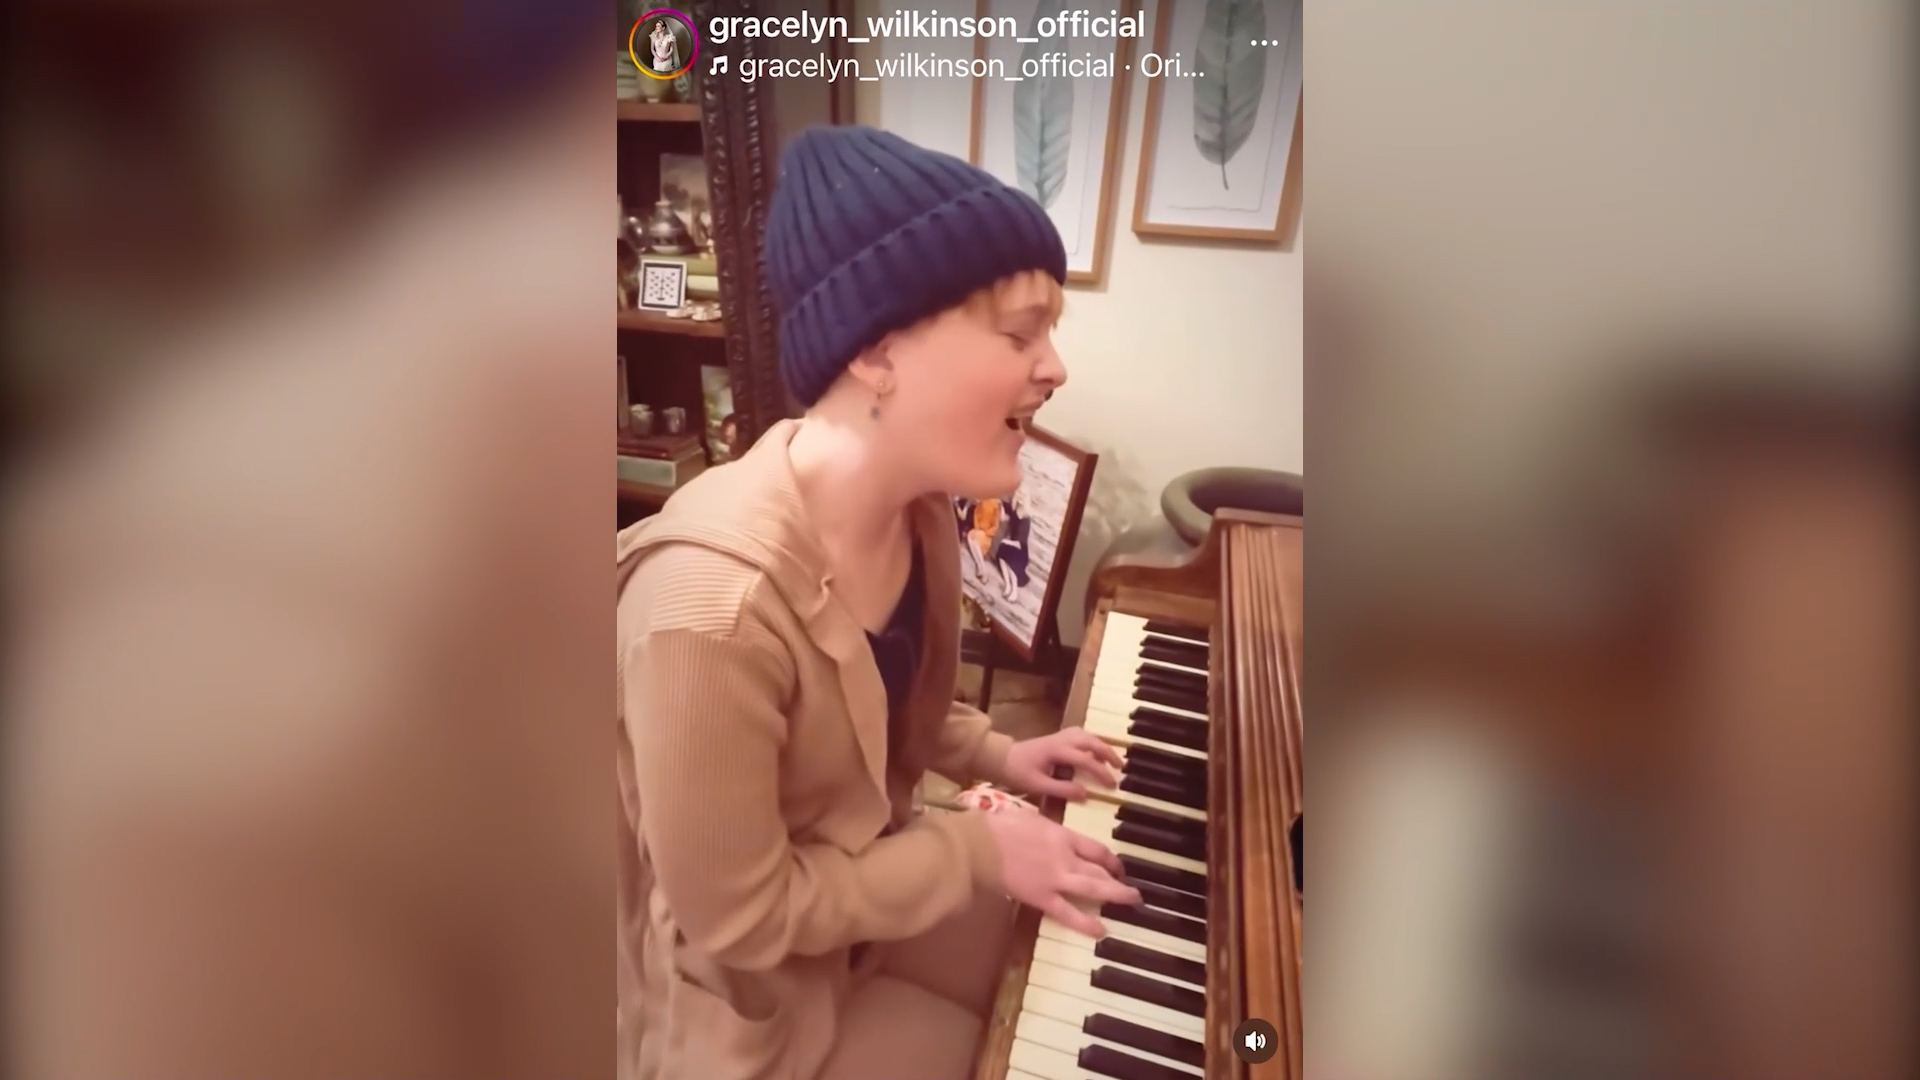 Gracelyn Wilkinson preforming one of her songs on Instagram....